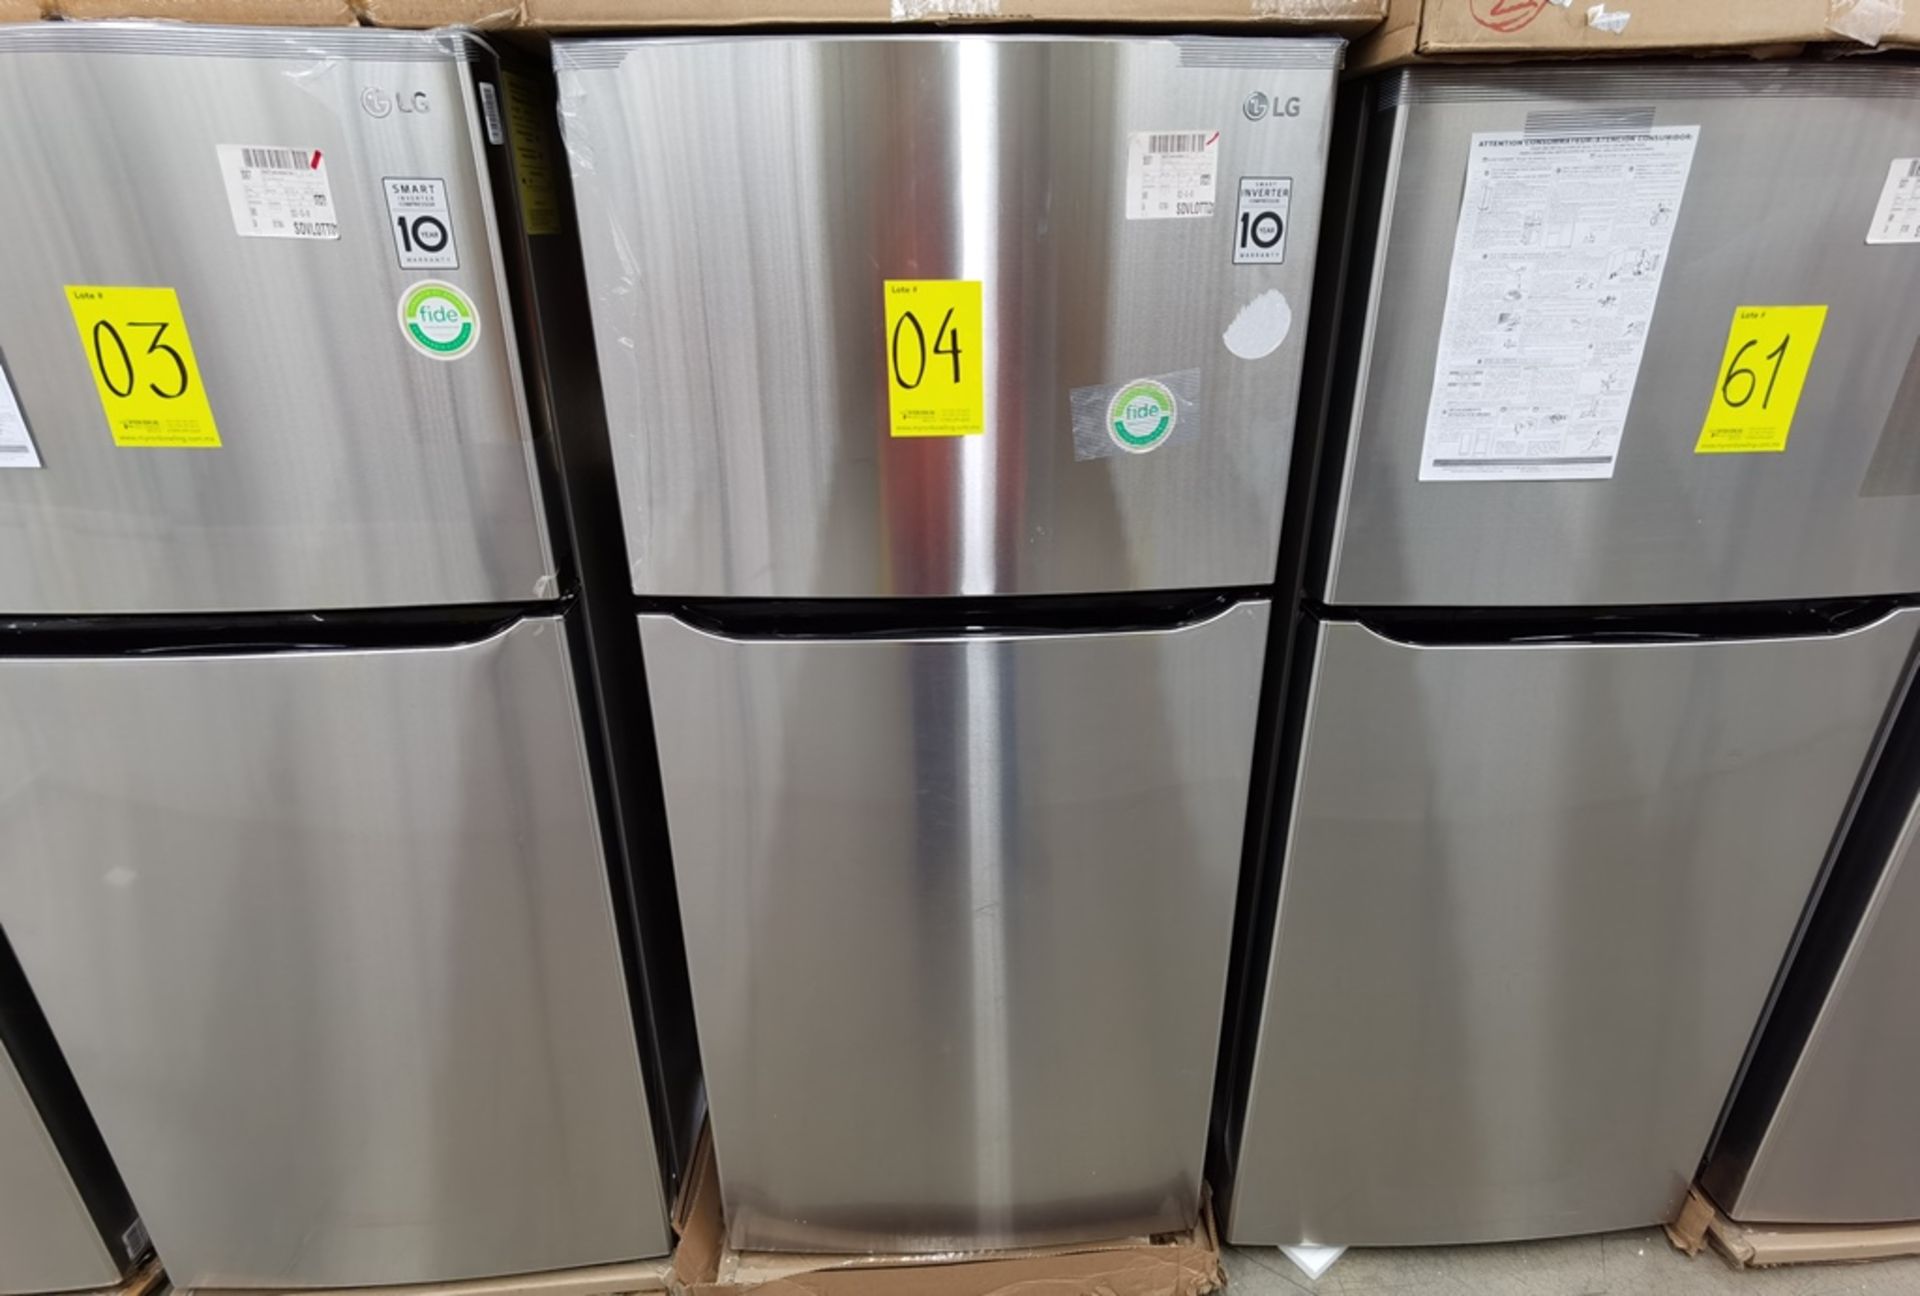 1 Refrigerador Marca LG, Modelo LT57BPSX, Serie 203MRTT3A865, Color Gris - Image 2 of 8